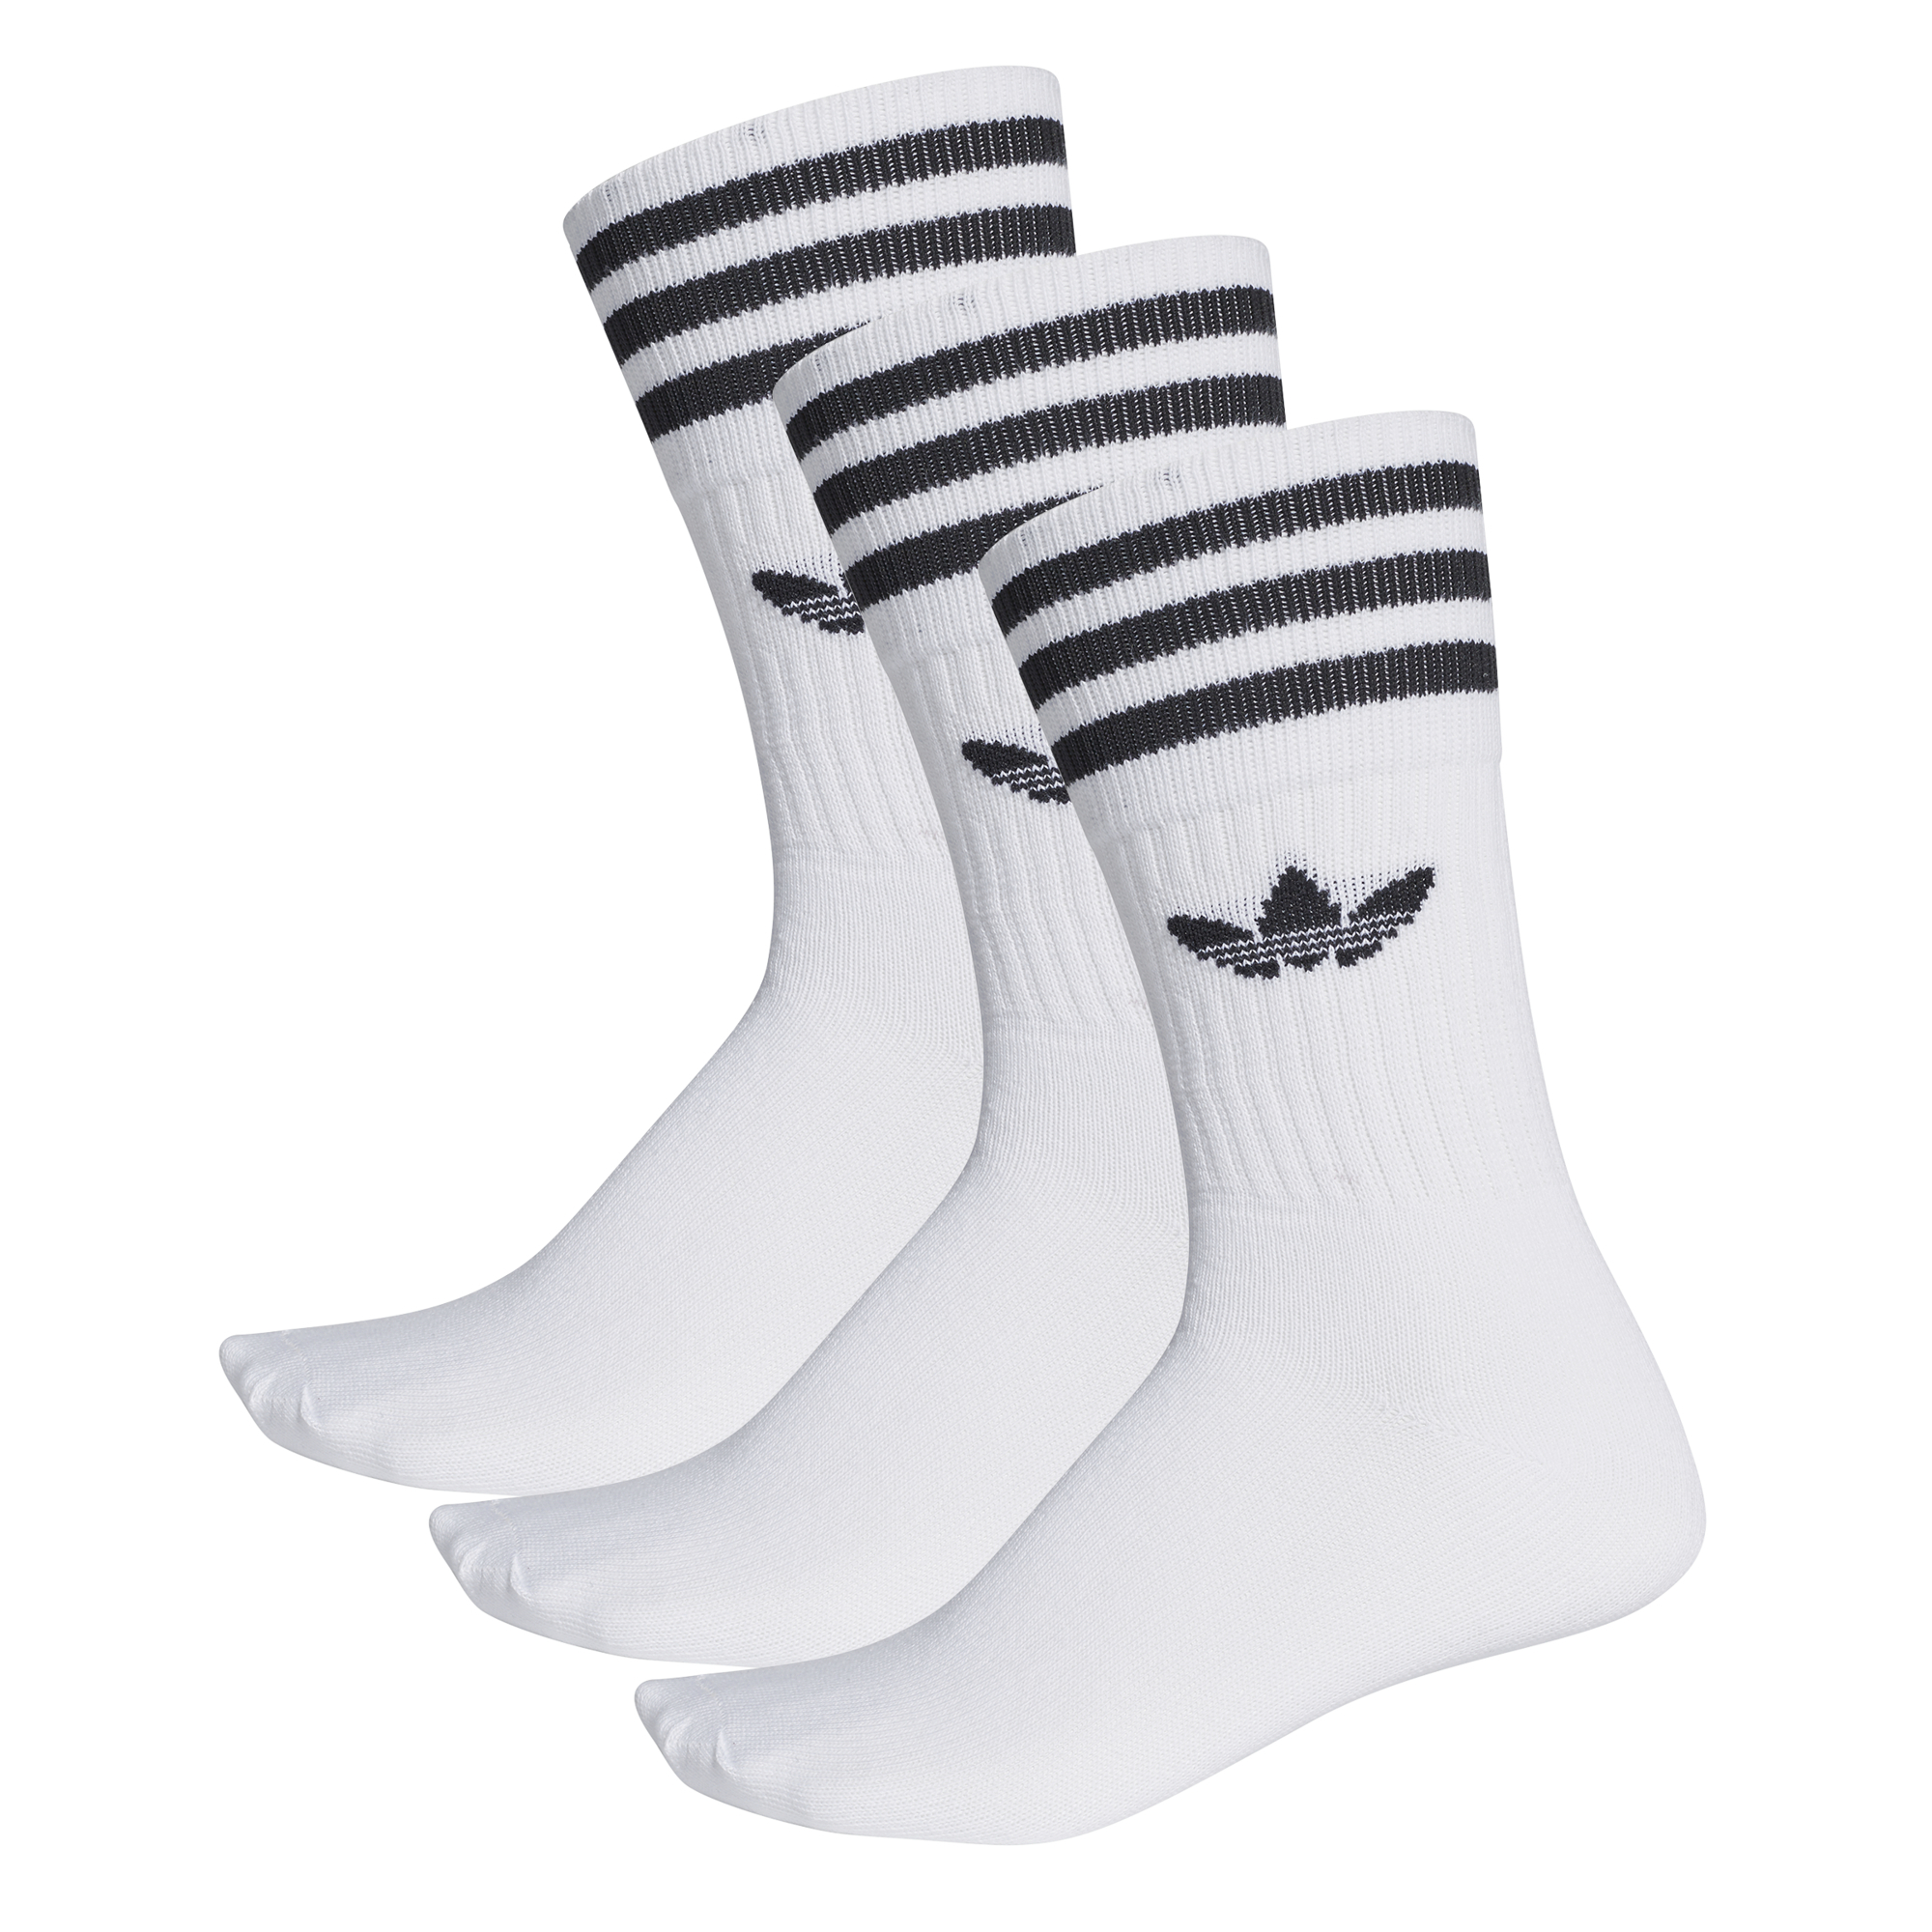 Adidas Originals Crew Sock 3 Pack (White/Black)